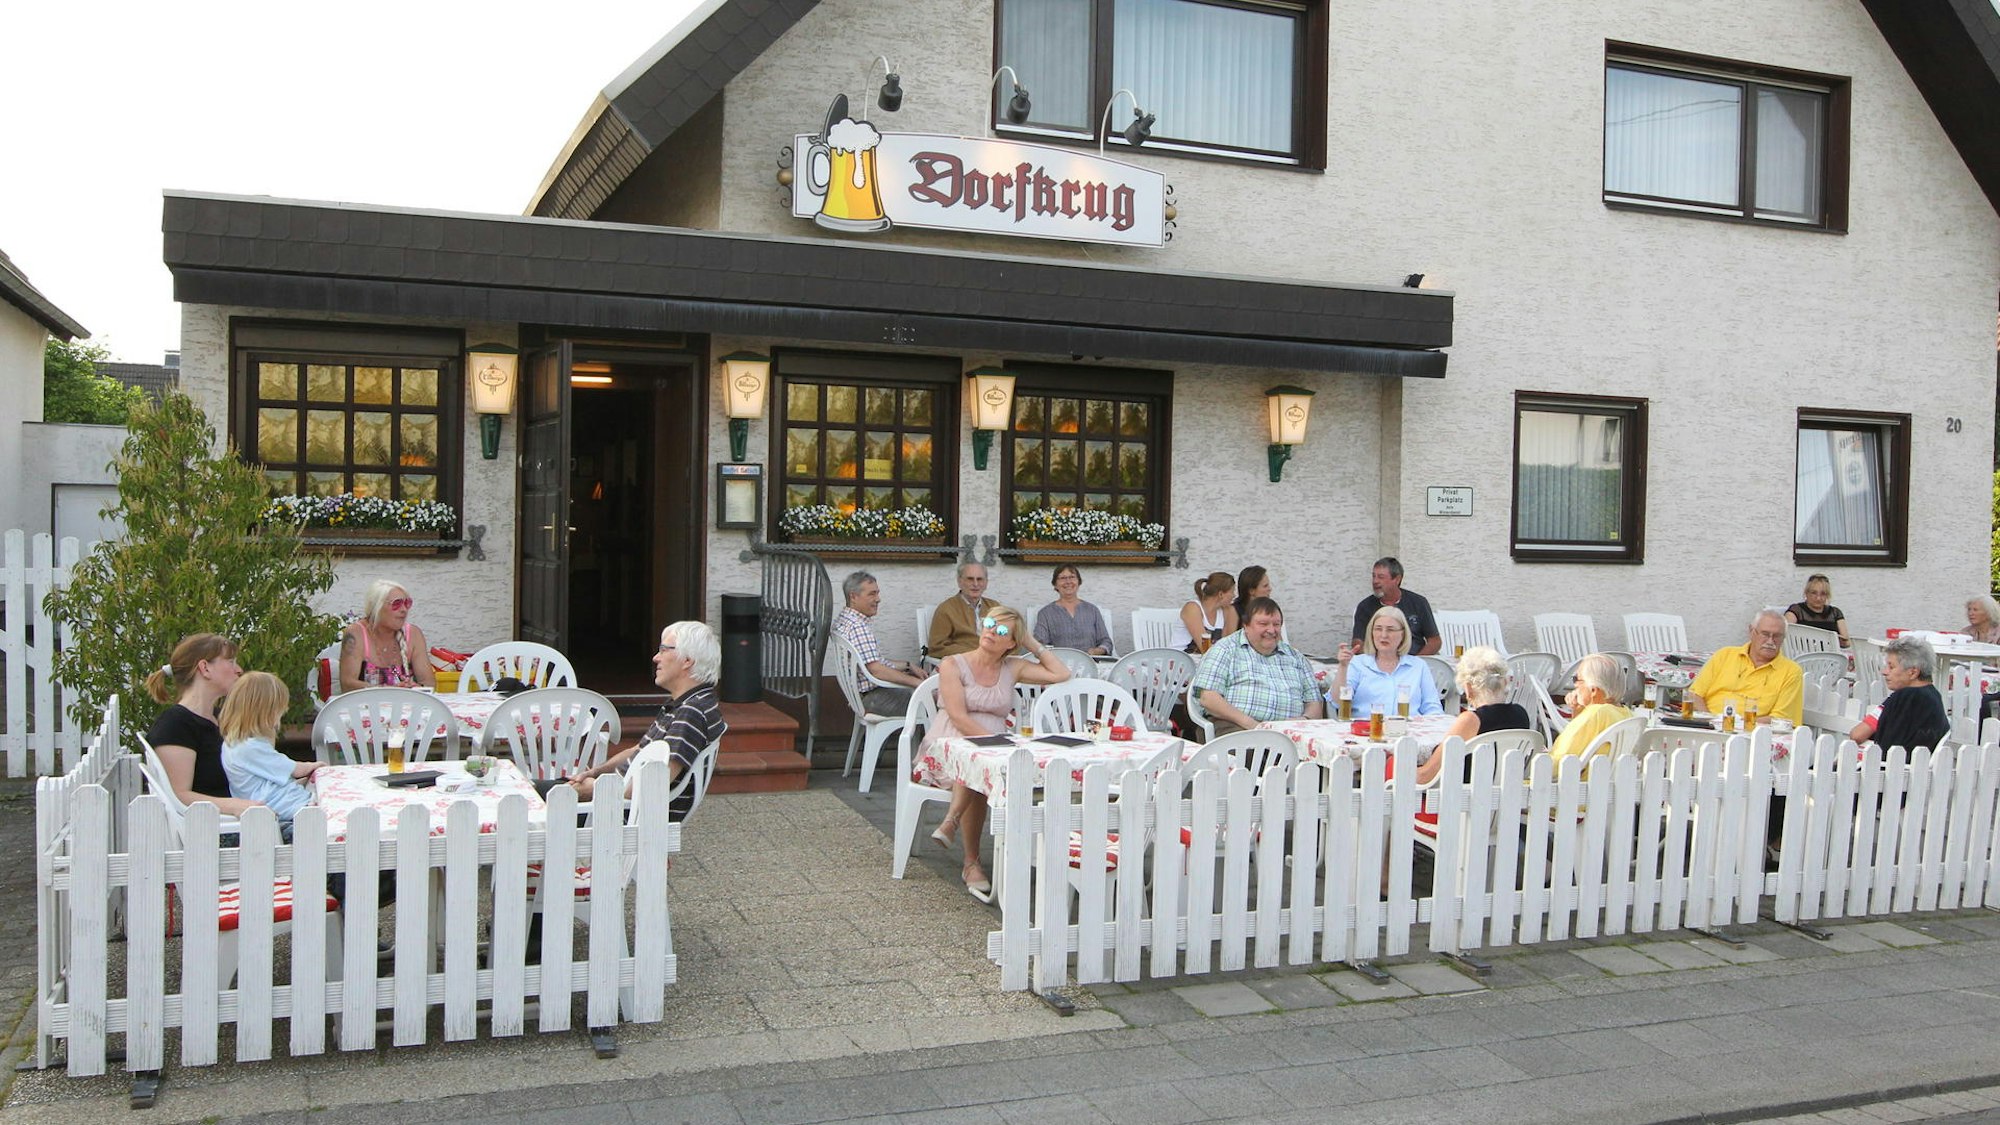 Vor einem Gebäude mit dem Schild „Dorfkurg“ sitzen mehrere Personen an Tischen im Freien.